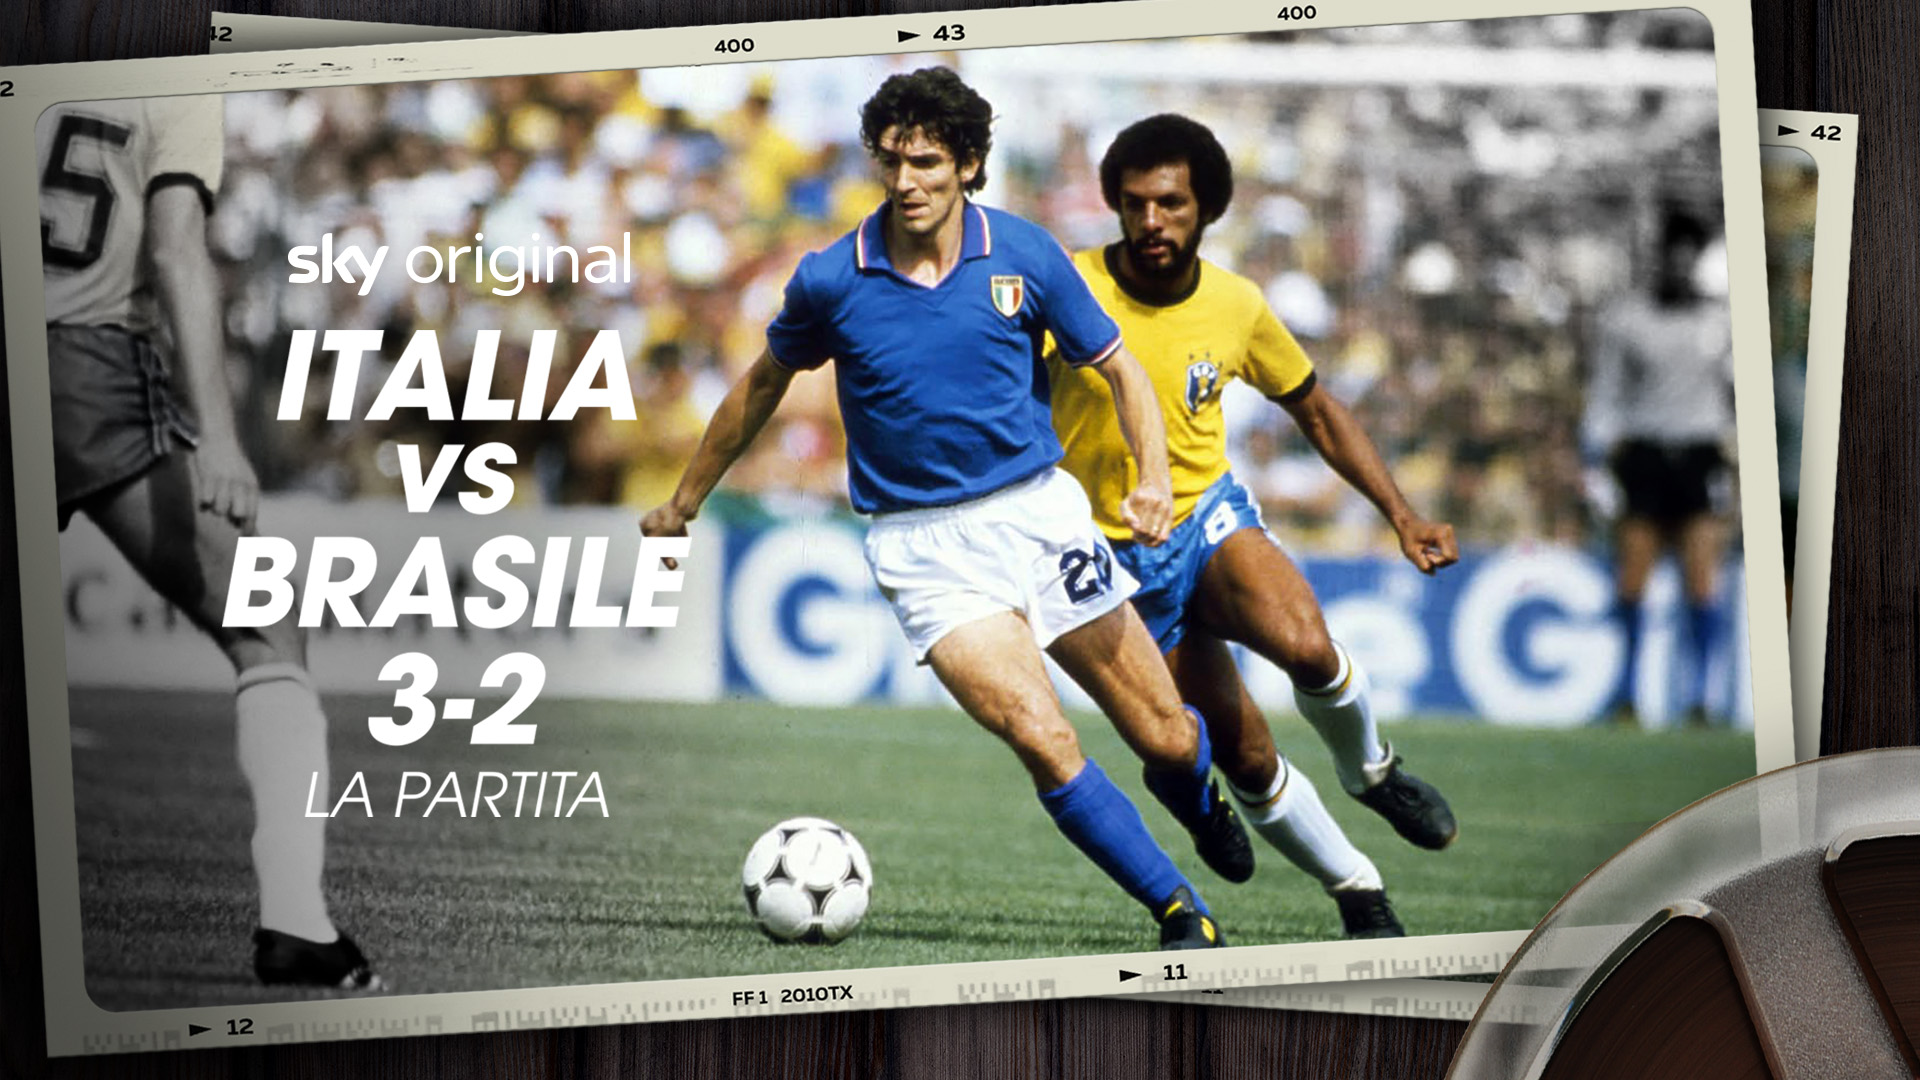 Italia vs Brasile 3-2 - La partita - Poster